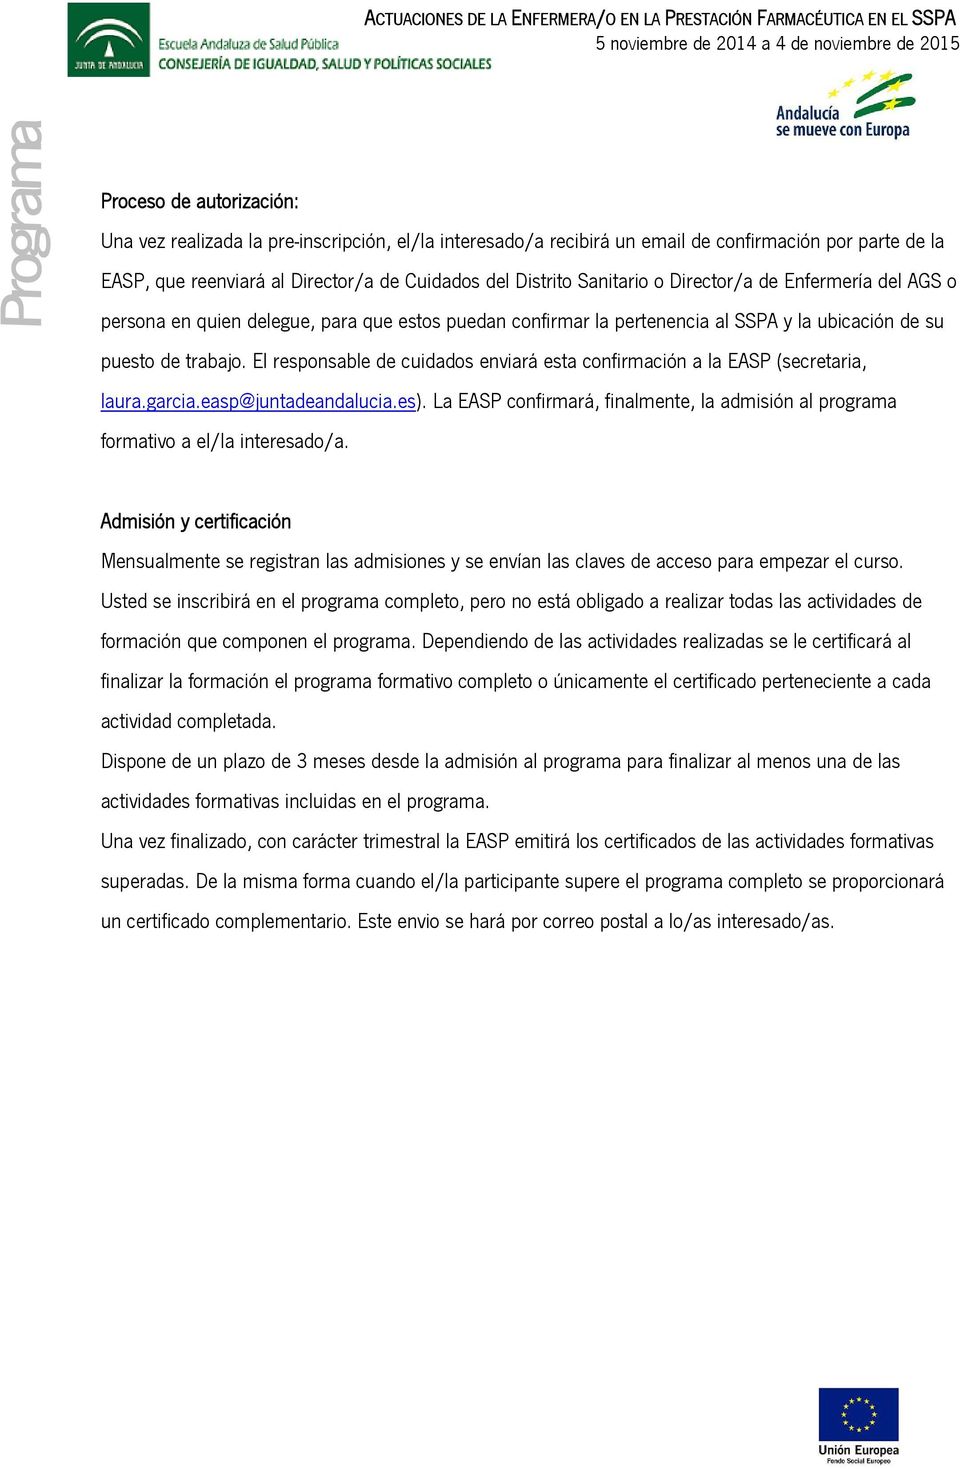 El responsable de cuidados enviará esta confirmación a la EASP (secretaria, laura.garcia.easp@juntadeandalucia.es).